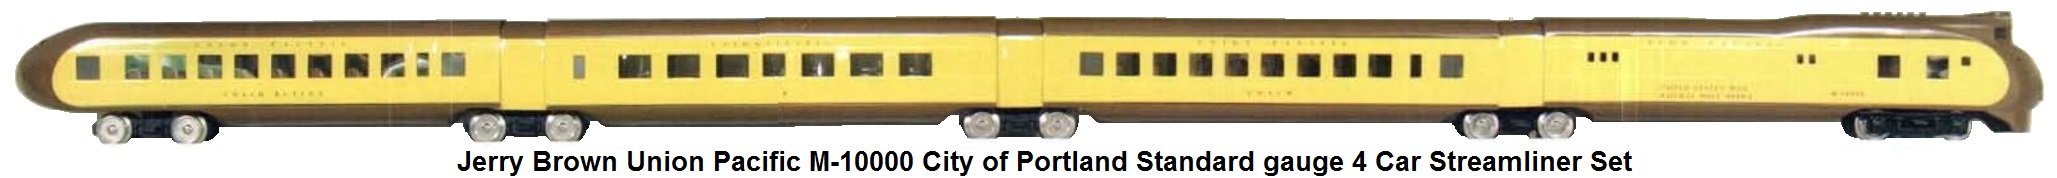 Jerry Brown UP M-10000 City of Portland 4 Car Streamliner Set in standard gauge